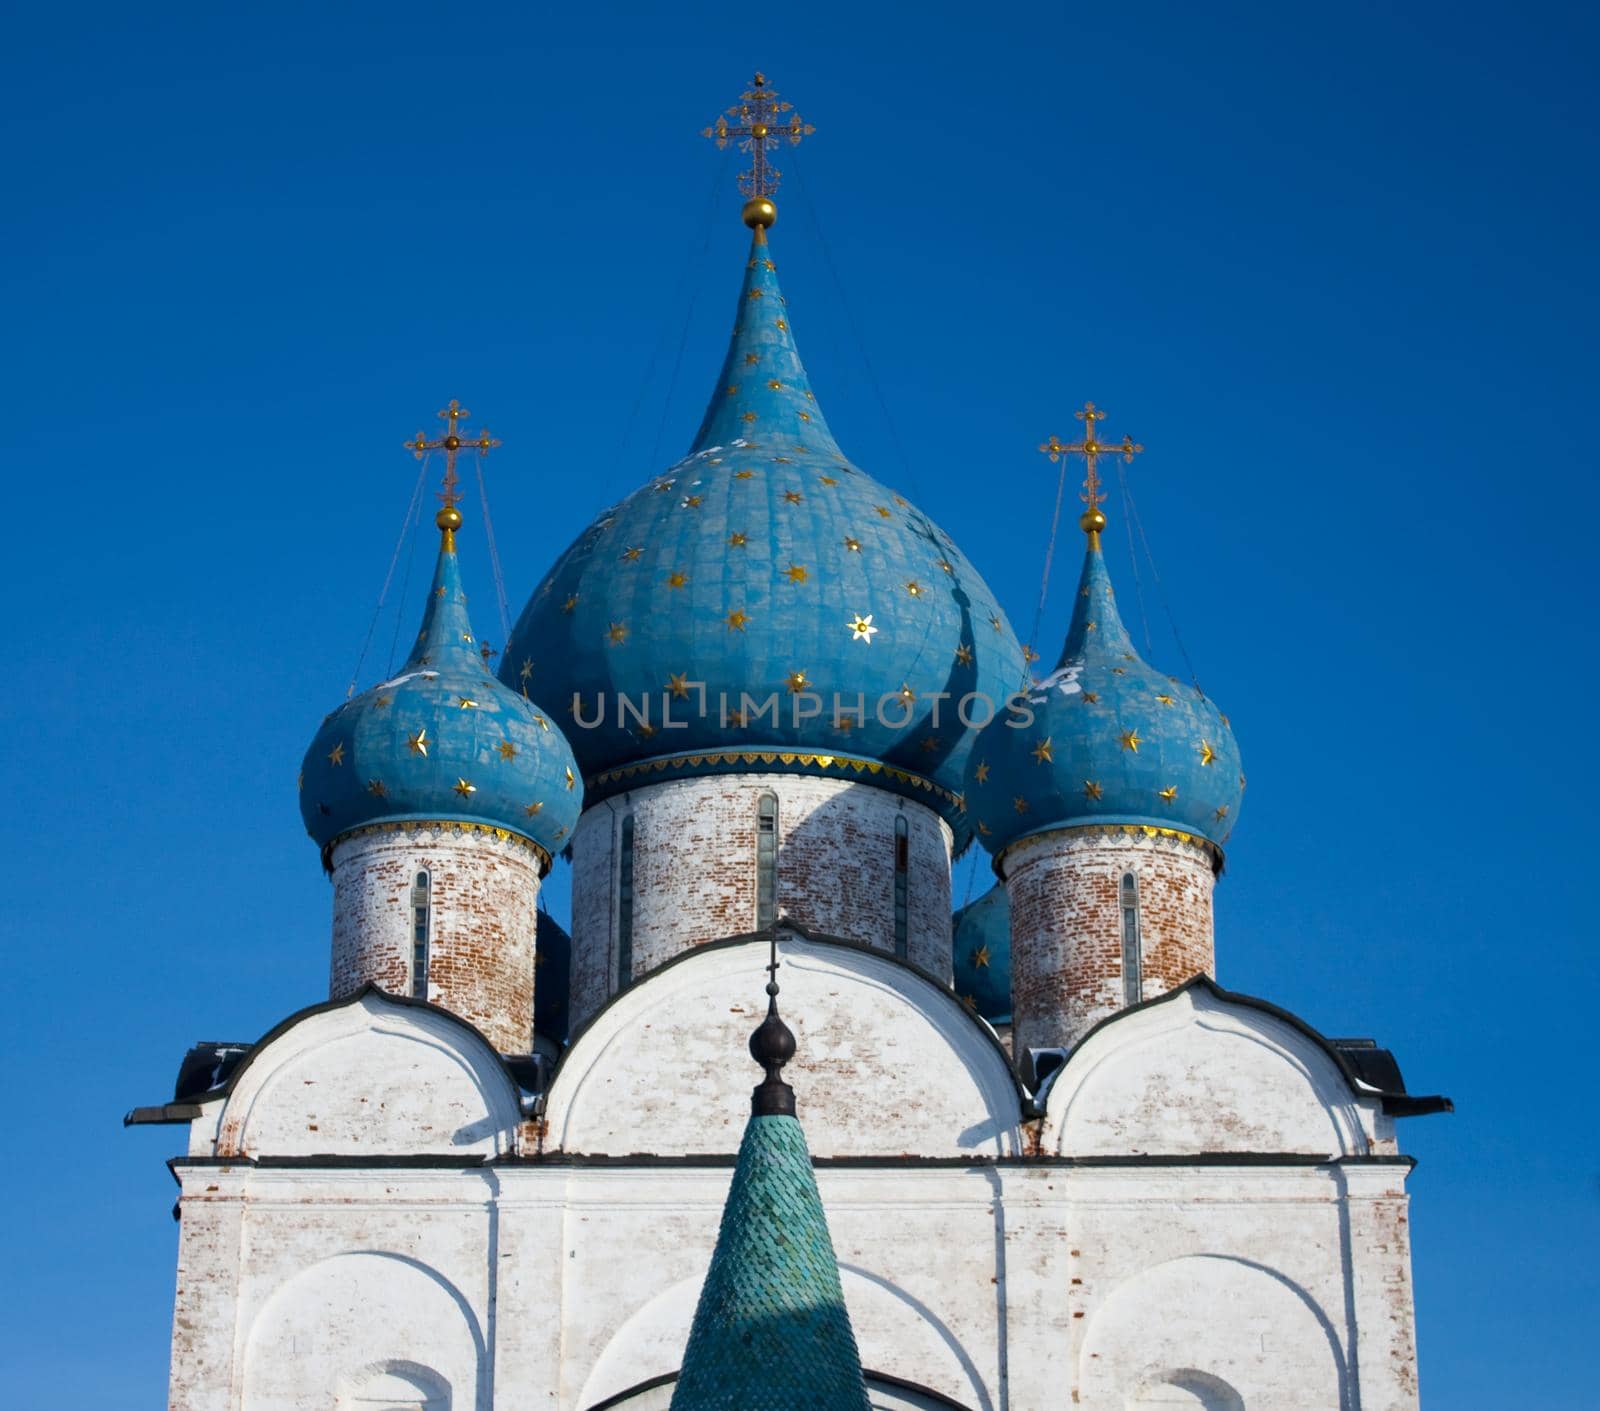 photo of Suzdal church, Russia